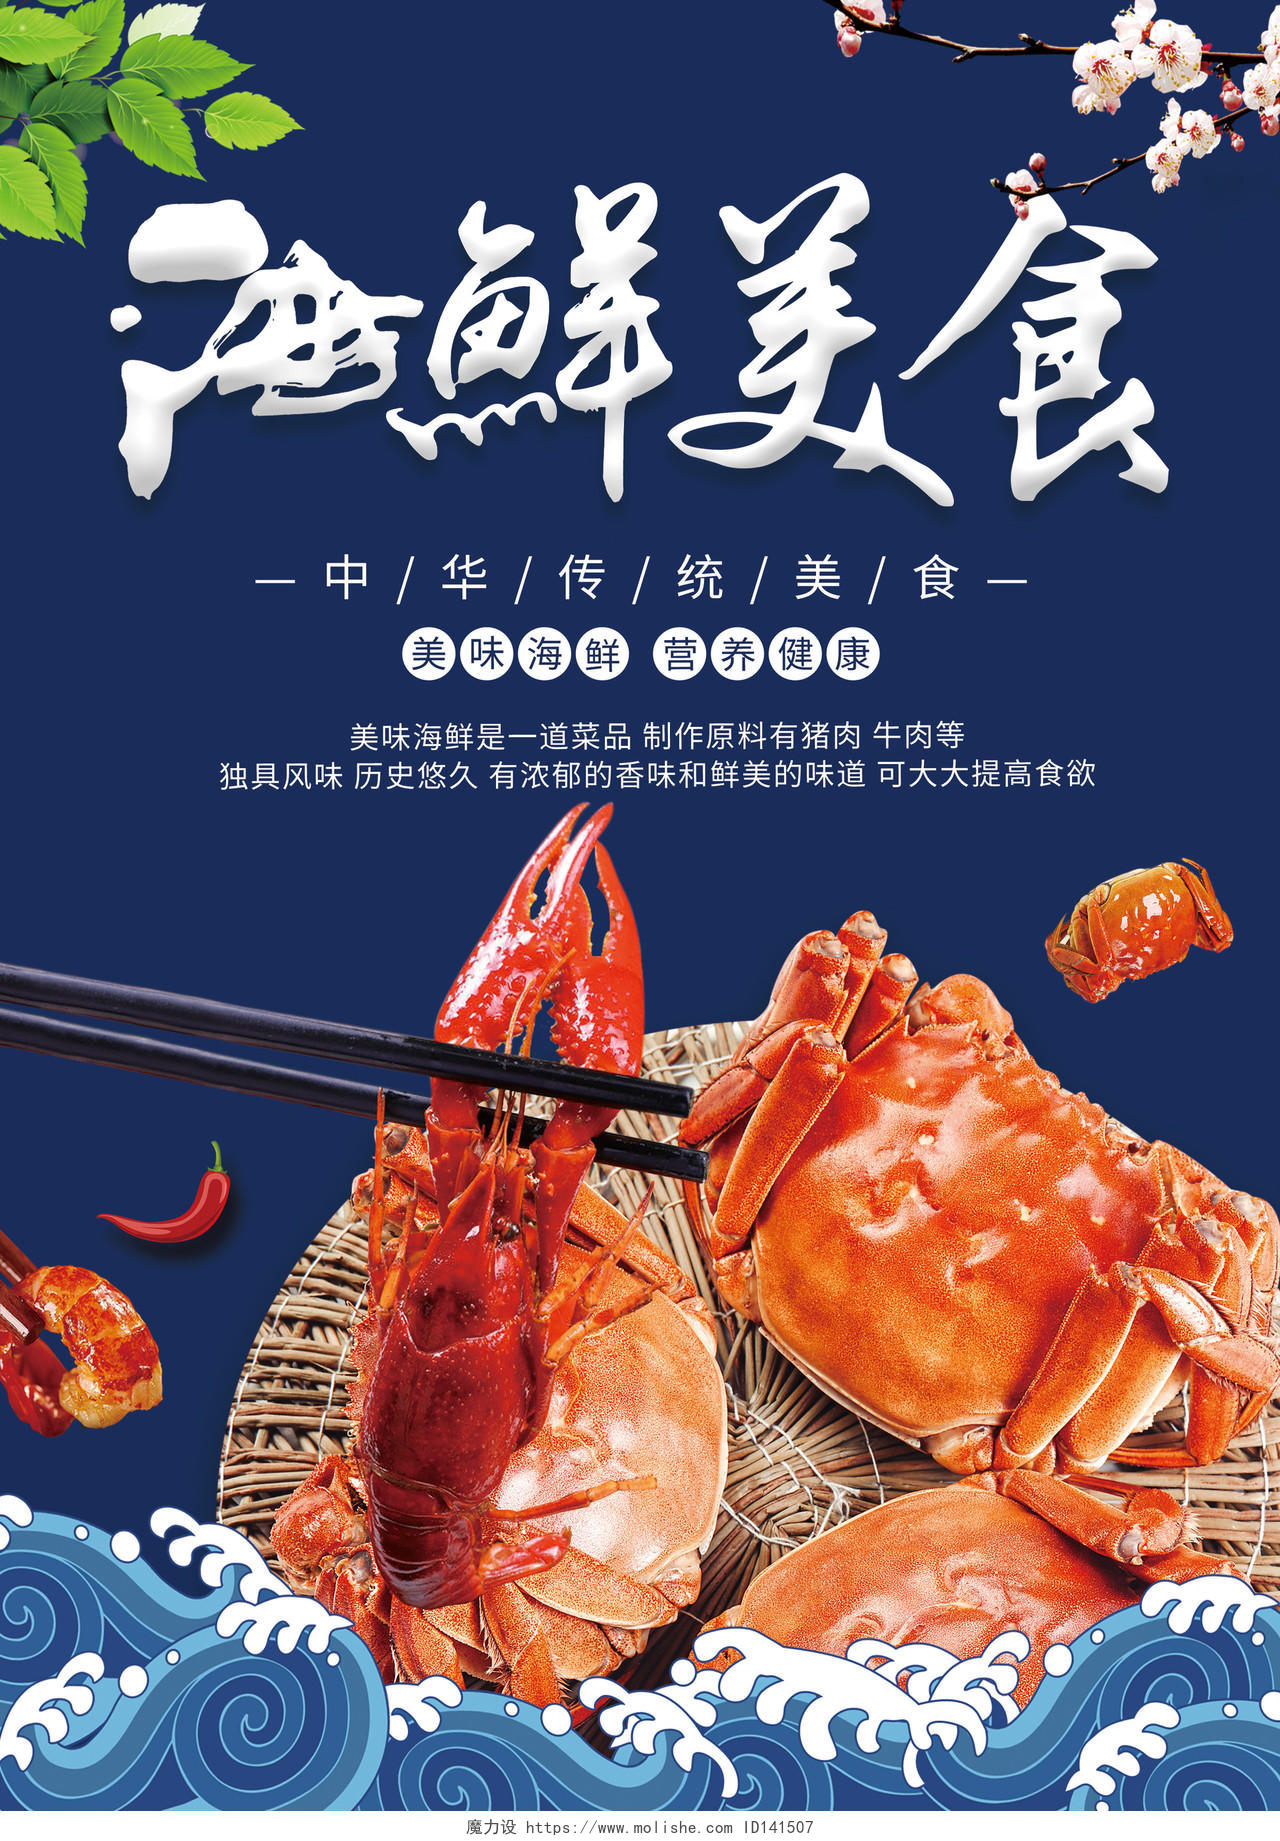 蓝色背景餐饮海鲜美食菜单单传单页饭店宣传单海鲜菜单